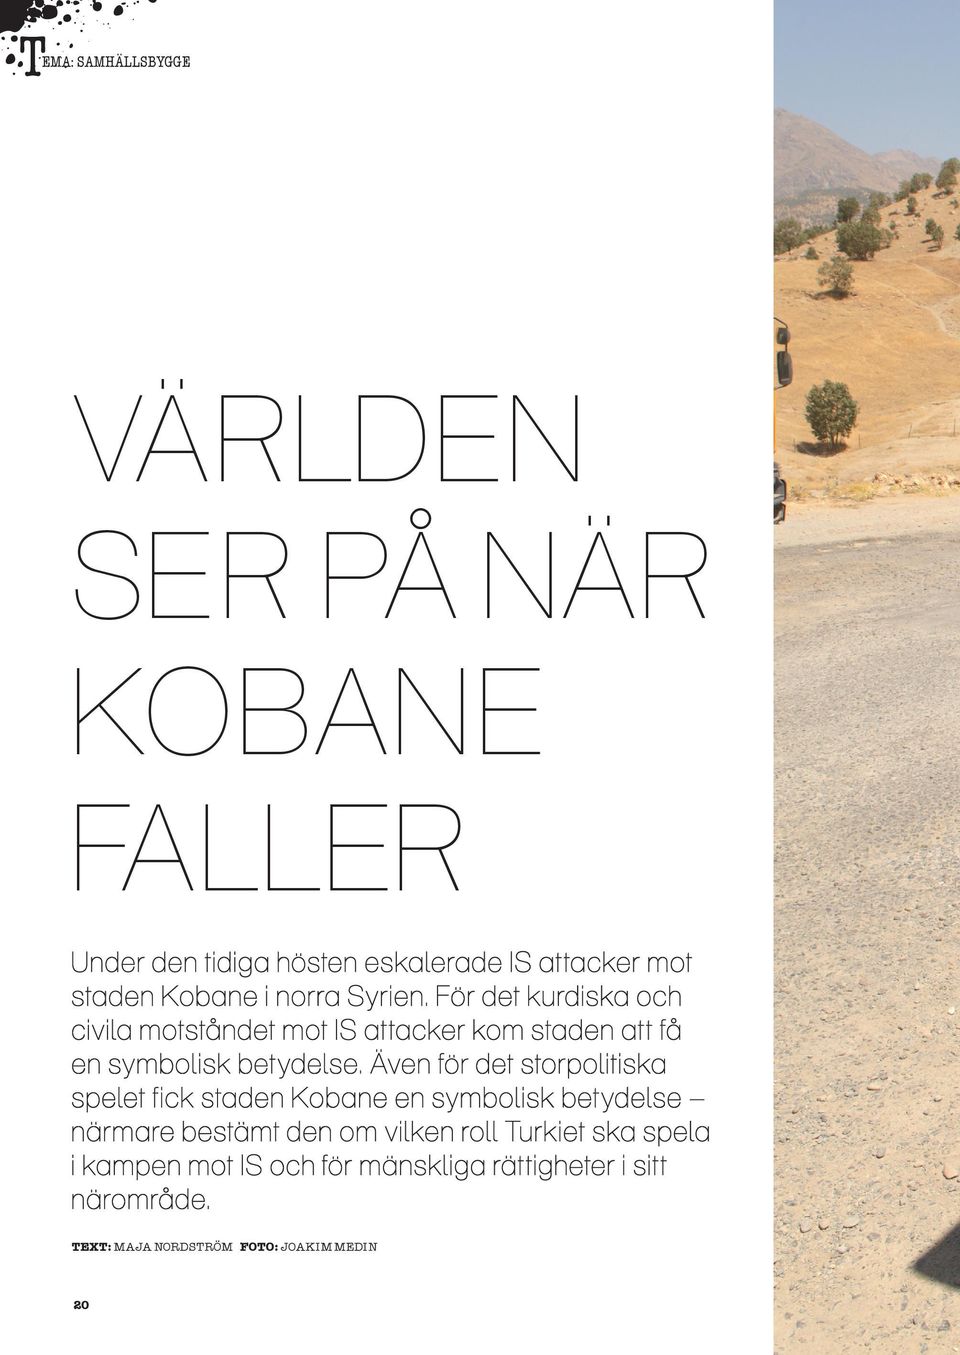 Även för det storpolitiska spelet fick staden Kobane en symbolisk betydelse närmare bestämt den om vilken roll Turkiet